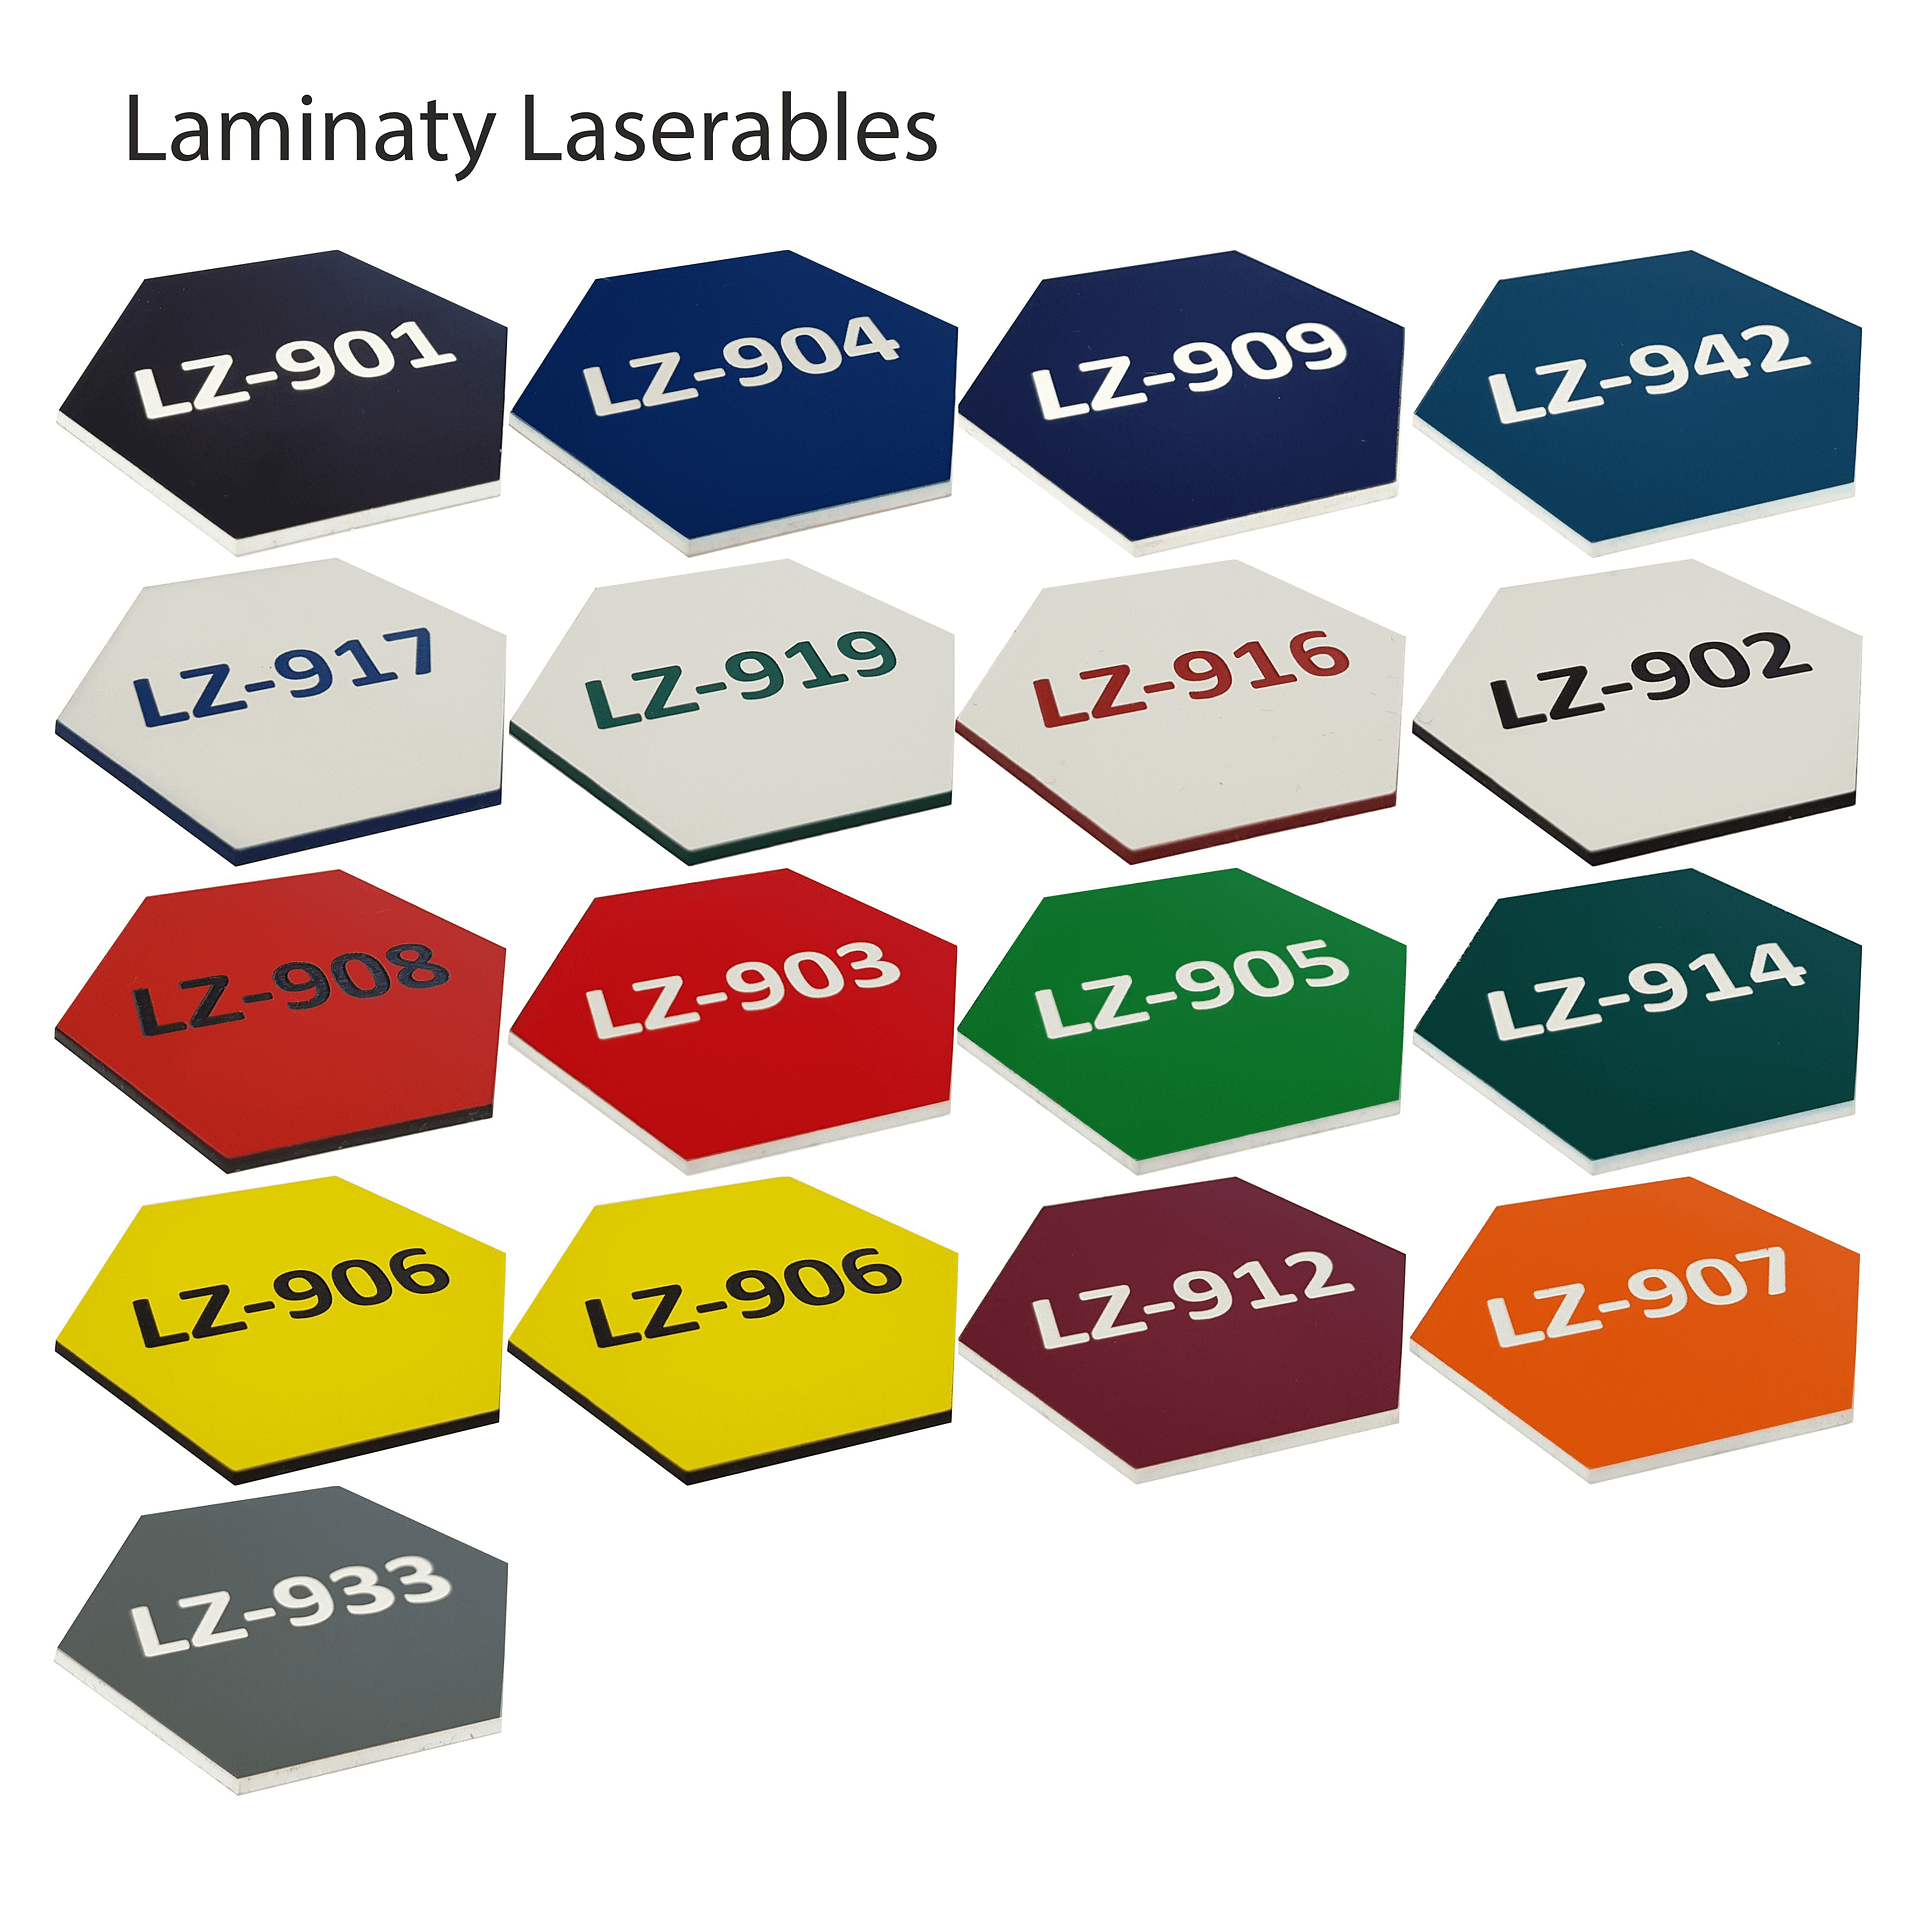 Laminaty Laserables